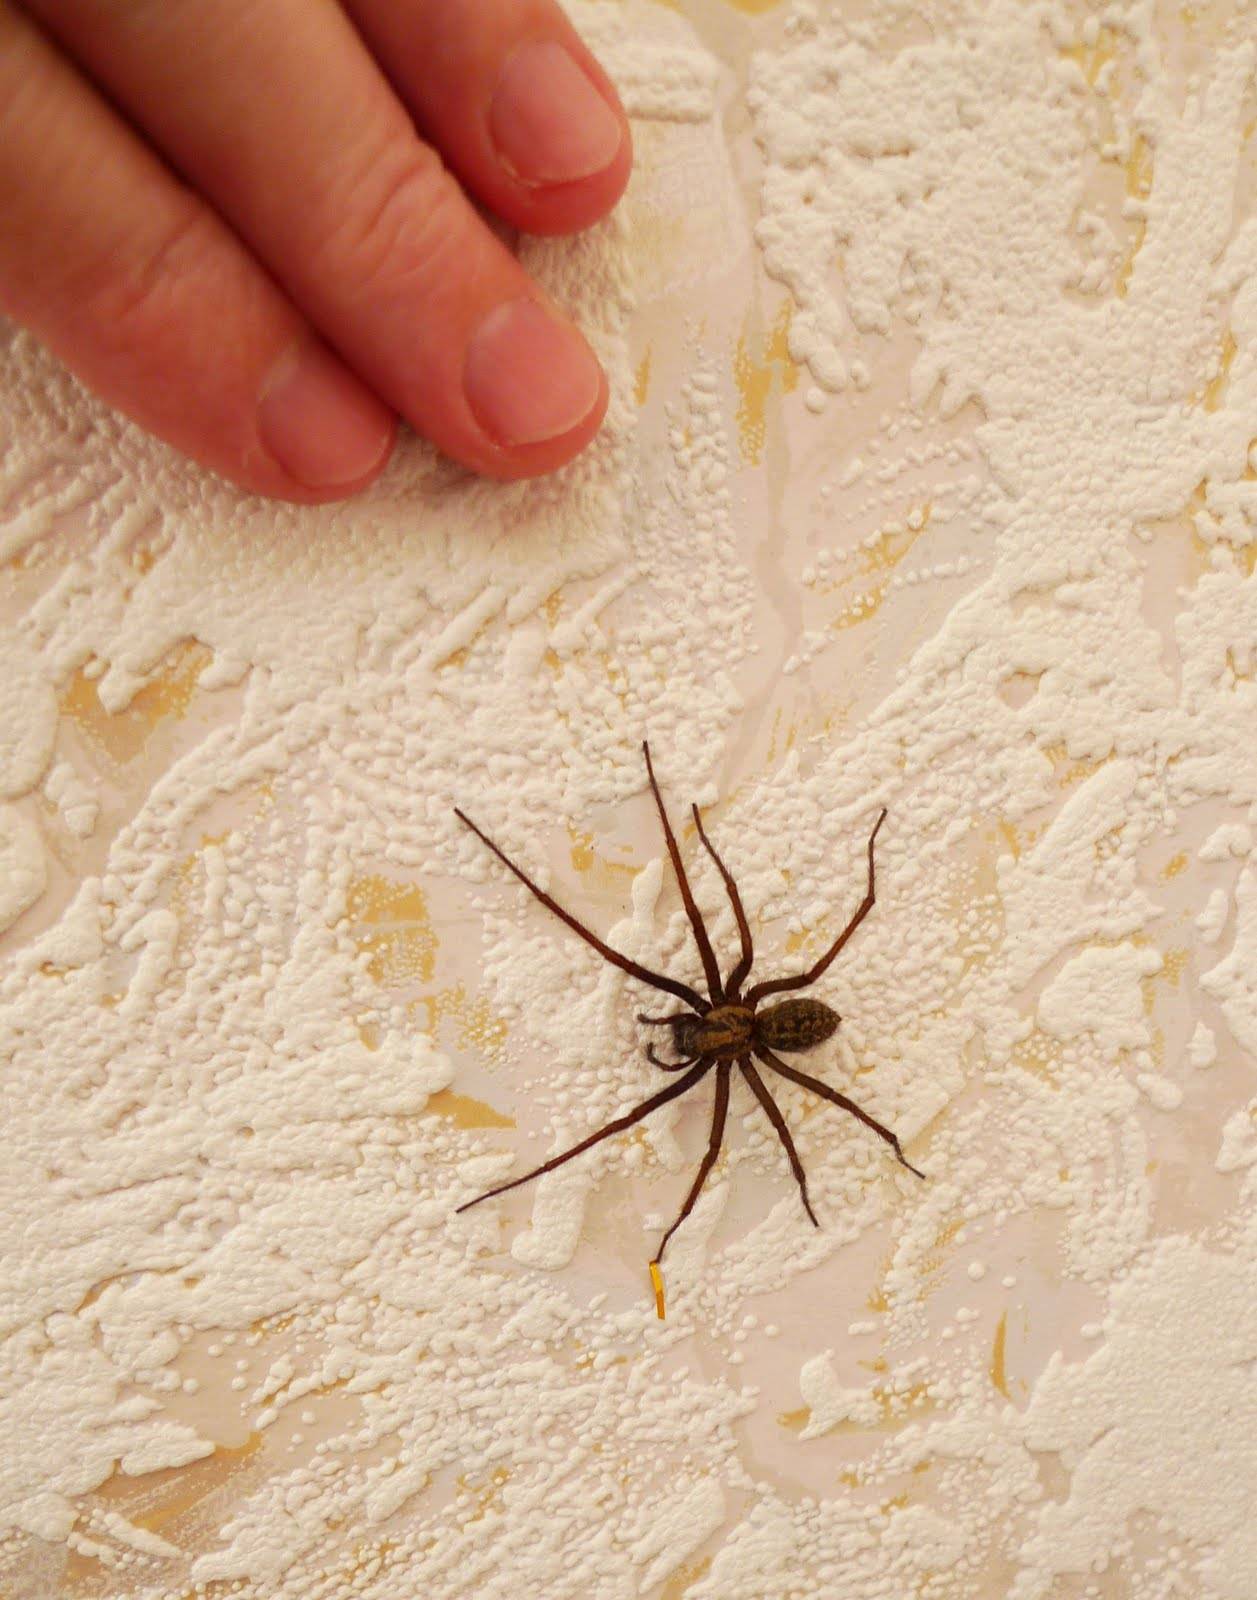 Сколько живут пауки в квартире и на природе, отчего зависит продалжительность их жизни?